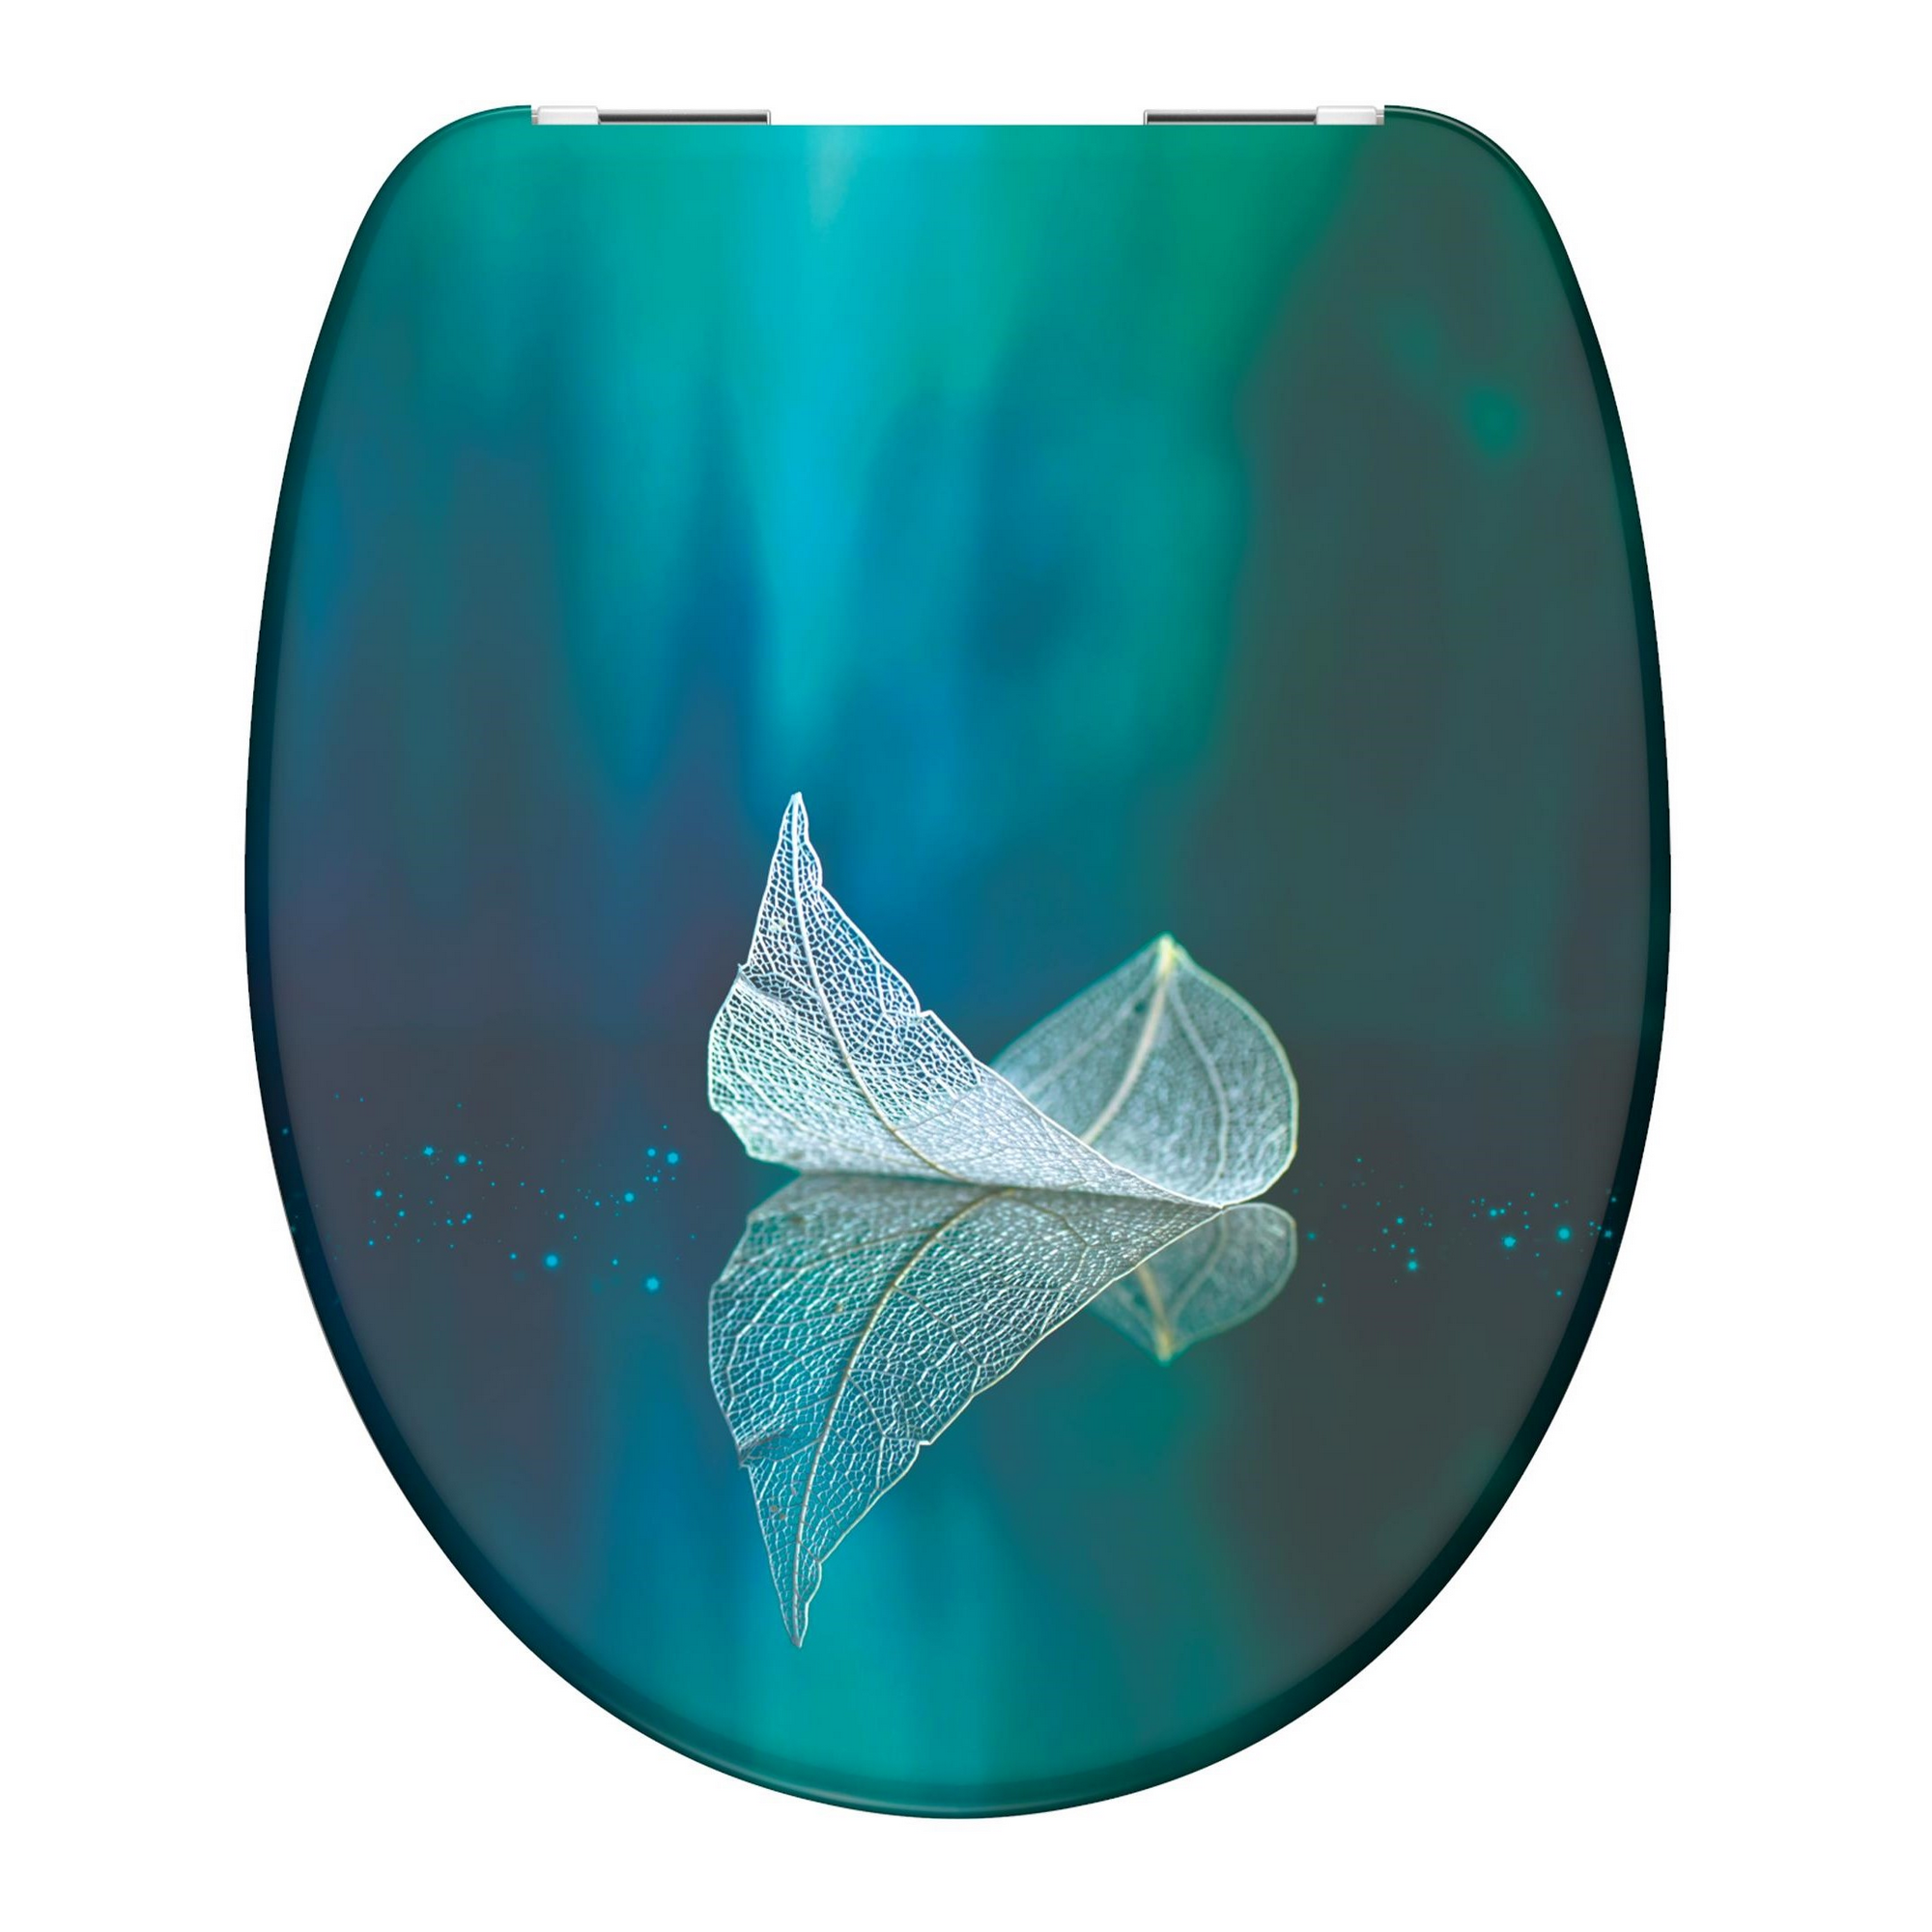 WC-Sitz 'Fallen Leaf' mit Absenkautomatik blau/grün 37,5 x 45 cm + product picture